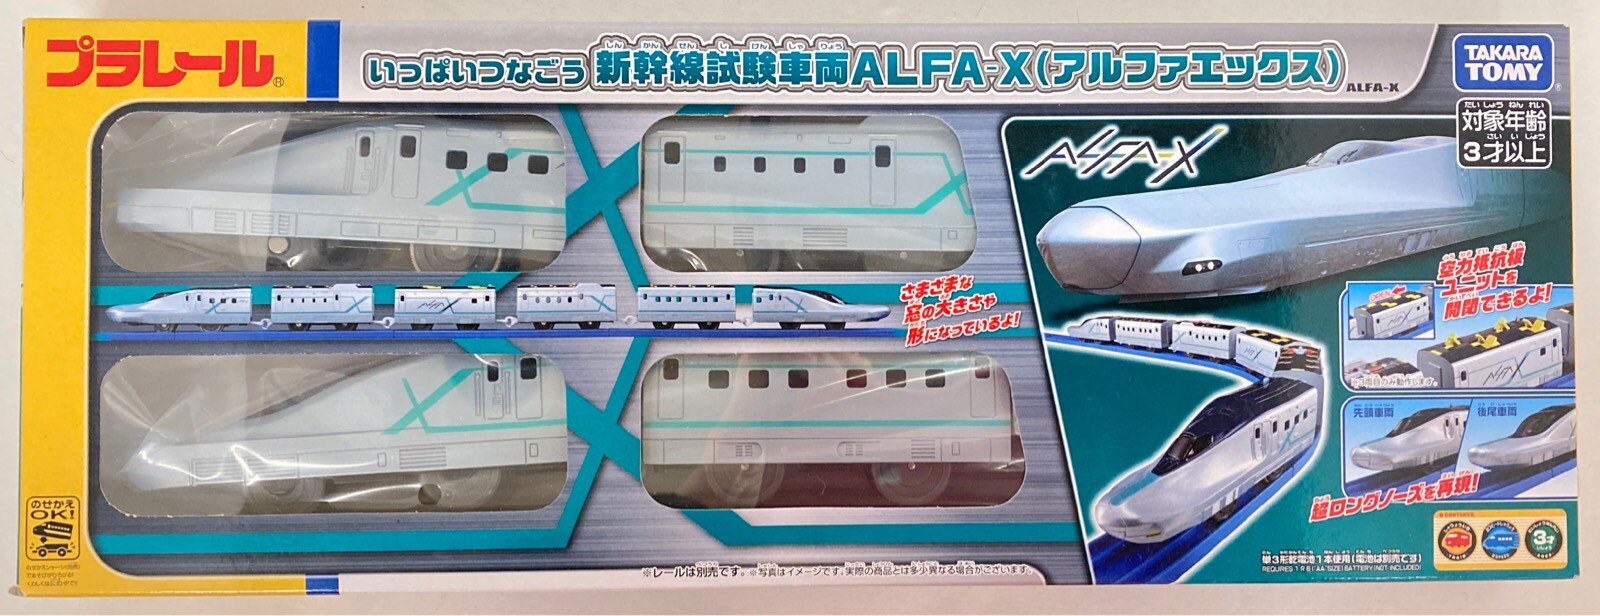 タカラトミー プラレール いっぱいつなごう 新幹線試験車両 ALFA-X (アルファエックス) ST19 まんだらけ Mandarake